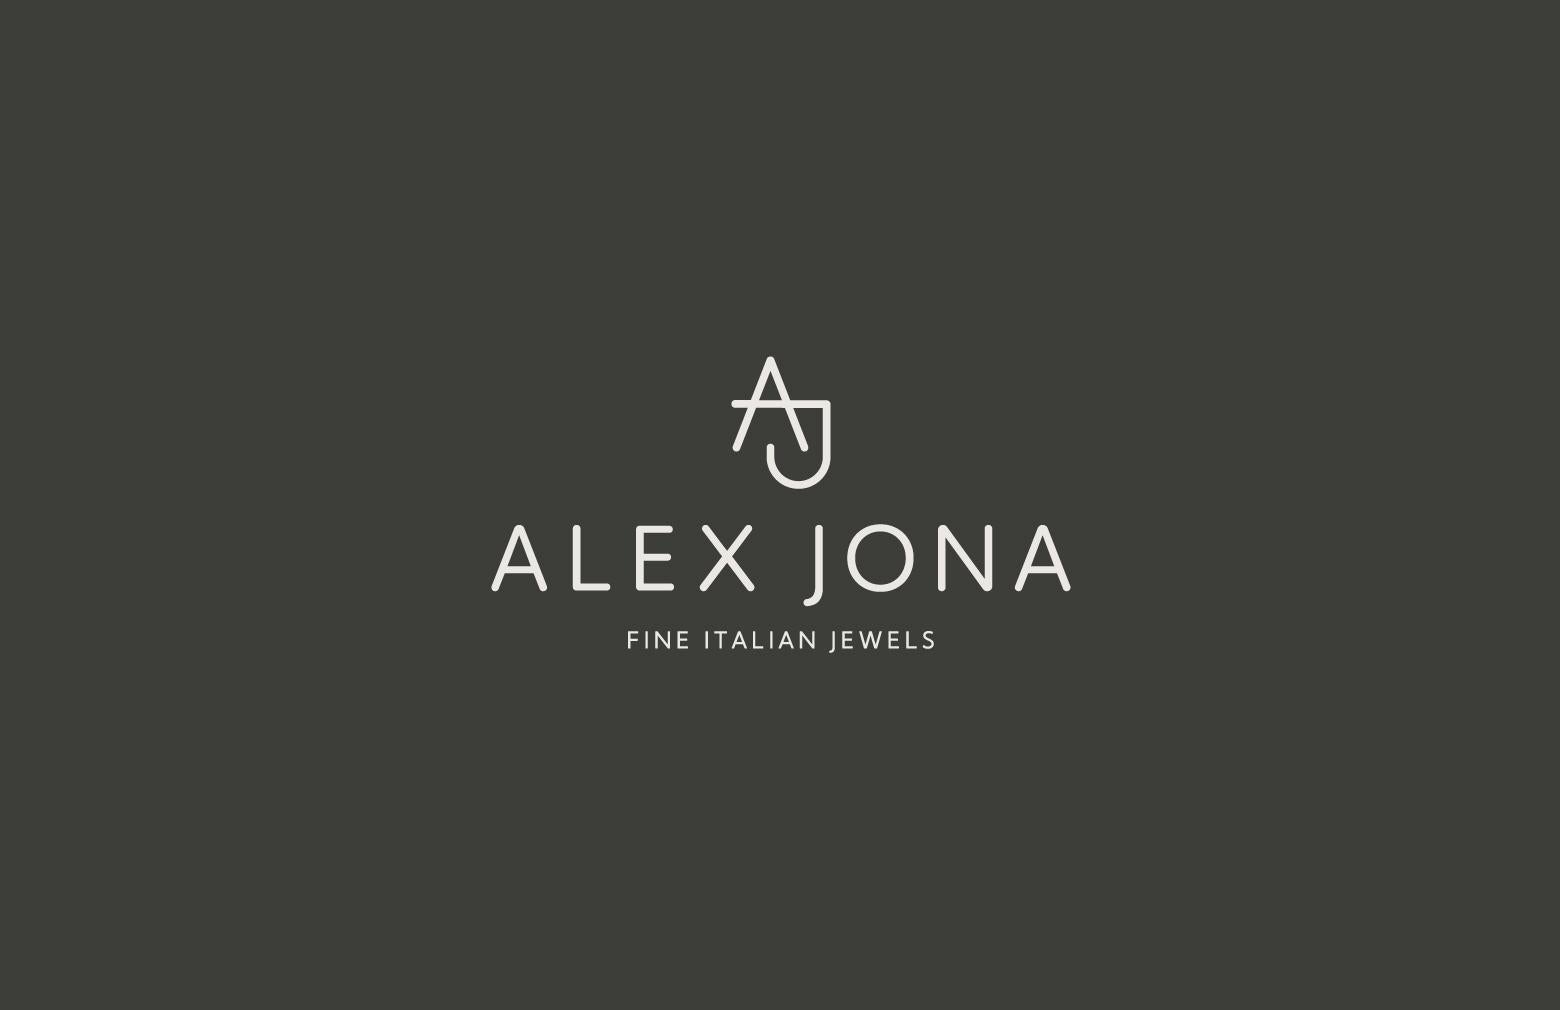 Alex Jona White Diamond 18 Karat White Gold Four-Leaf Clover Stud Earrings For Sale 3